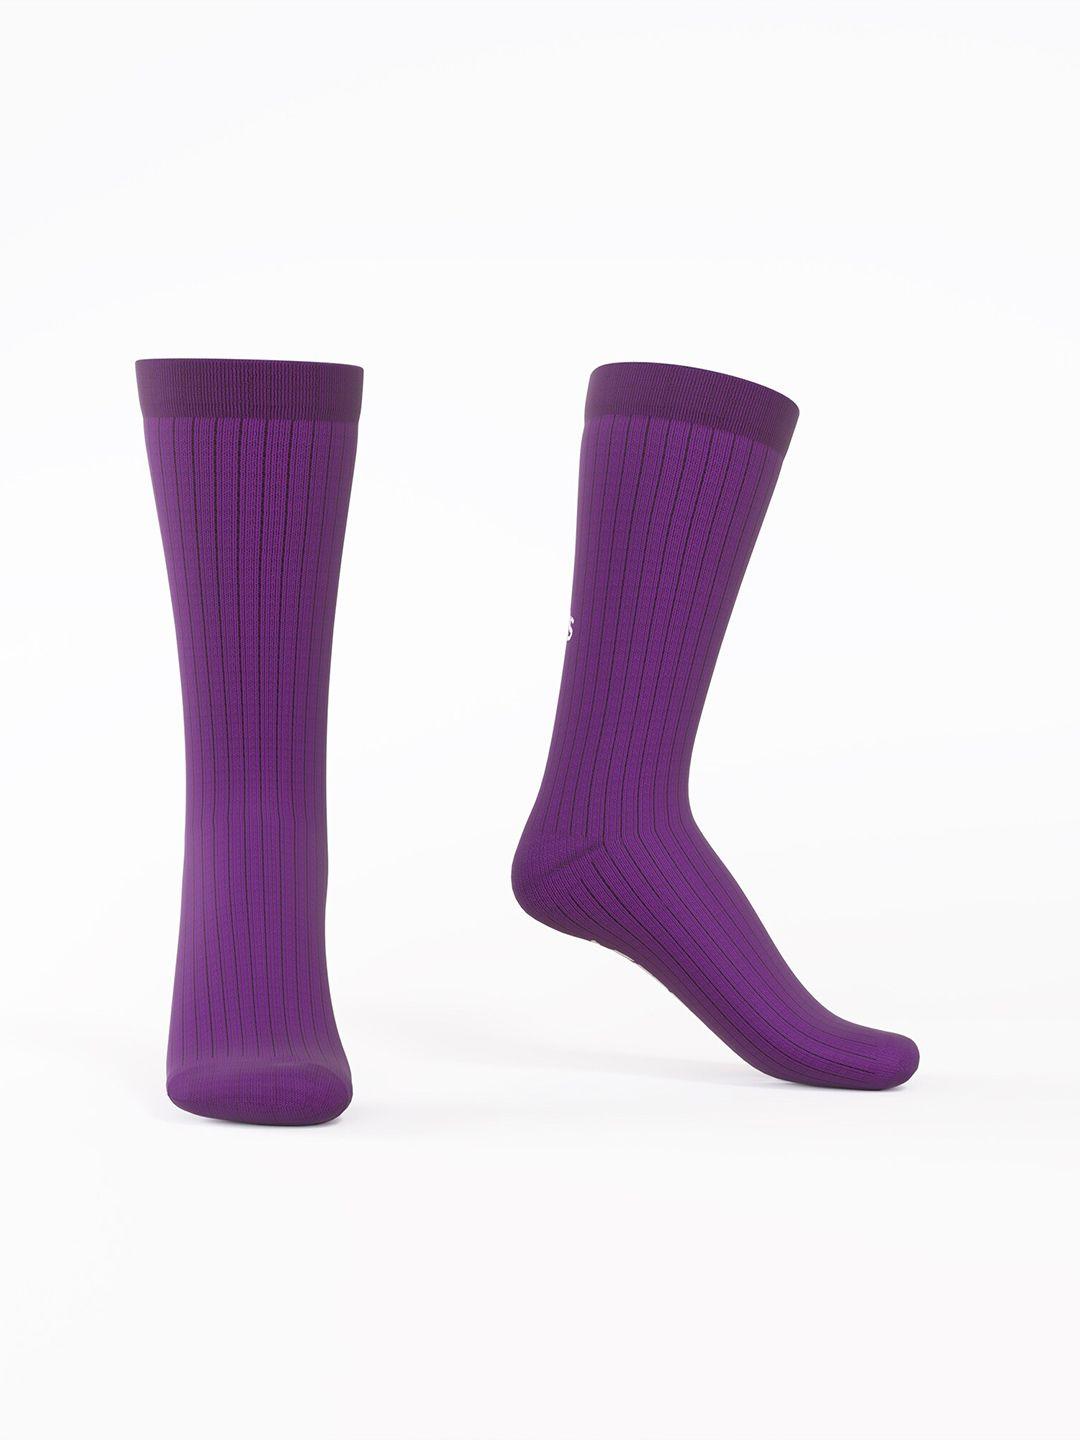 talkingsox unisex pack of 2 calf length socks